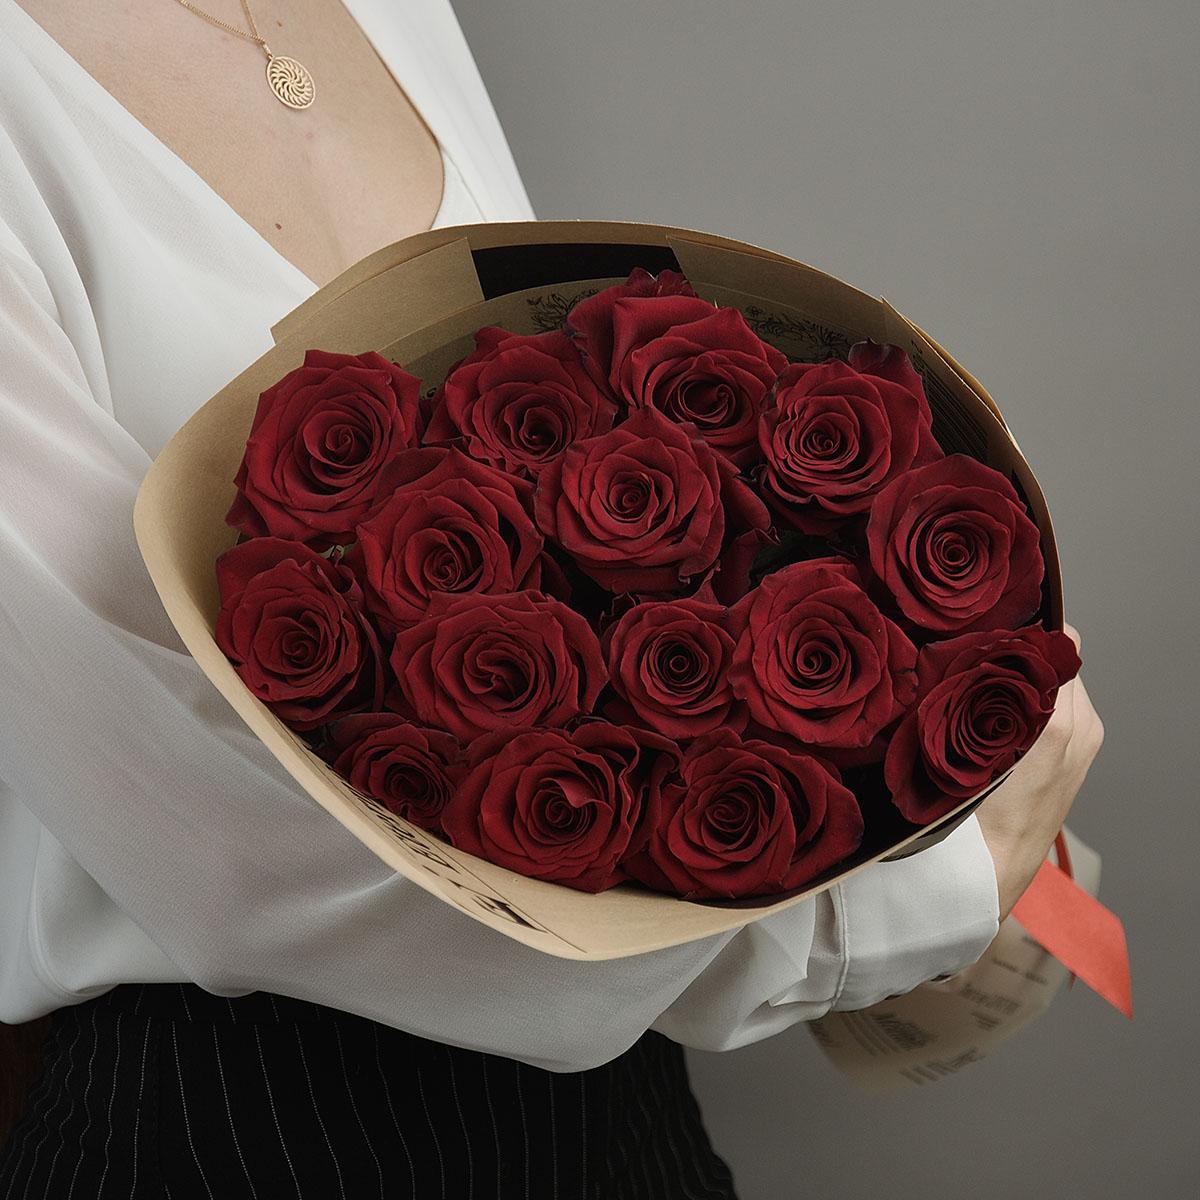 15 красных роз 40 см